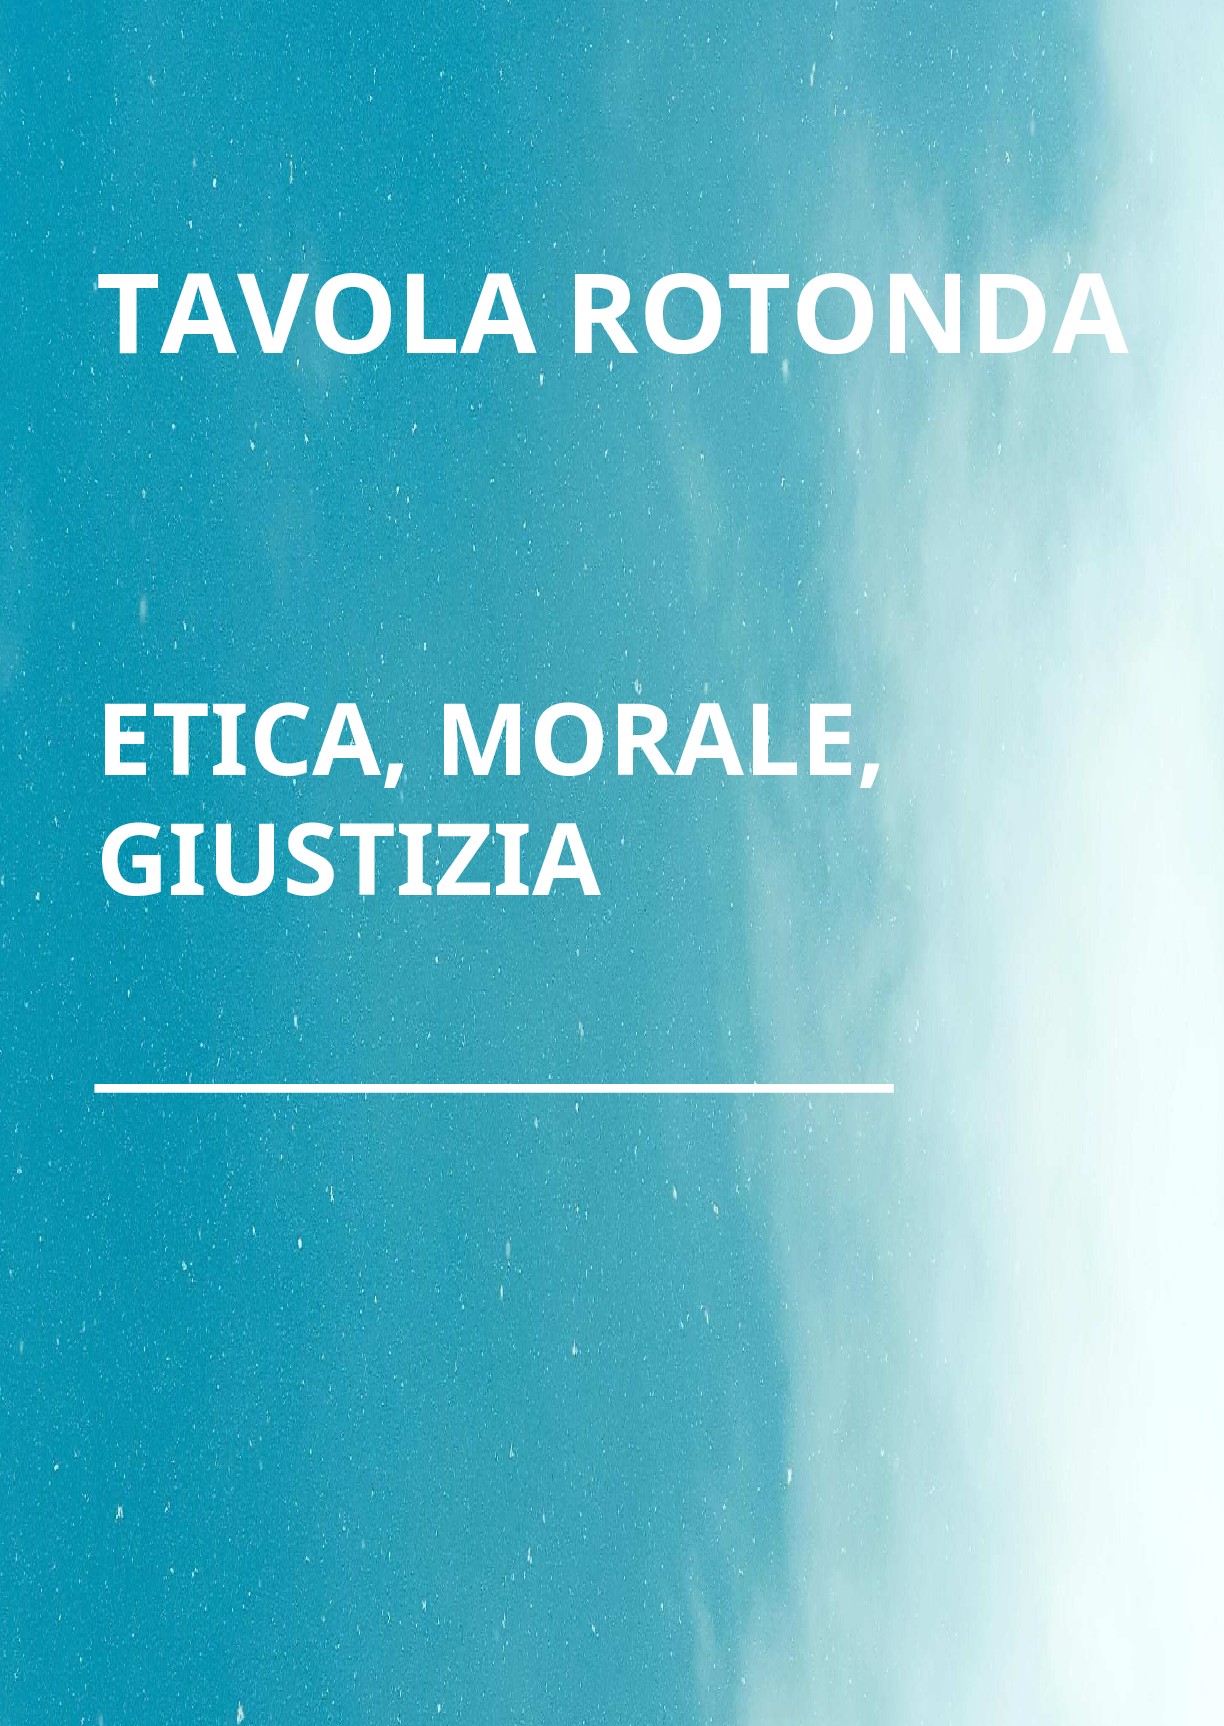 Copertina di ETICA, MORALE, GIUSTIZIA - Tavola Rotonda